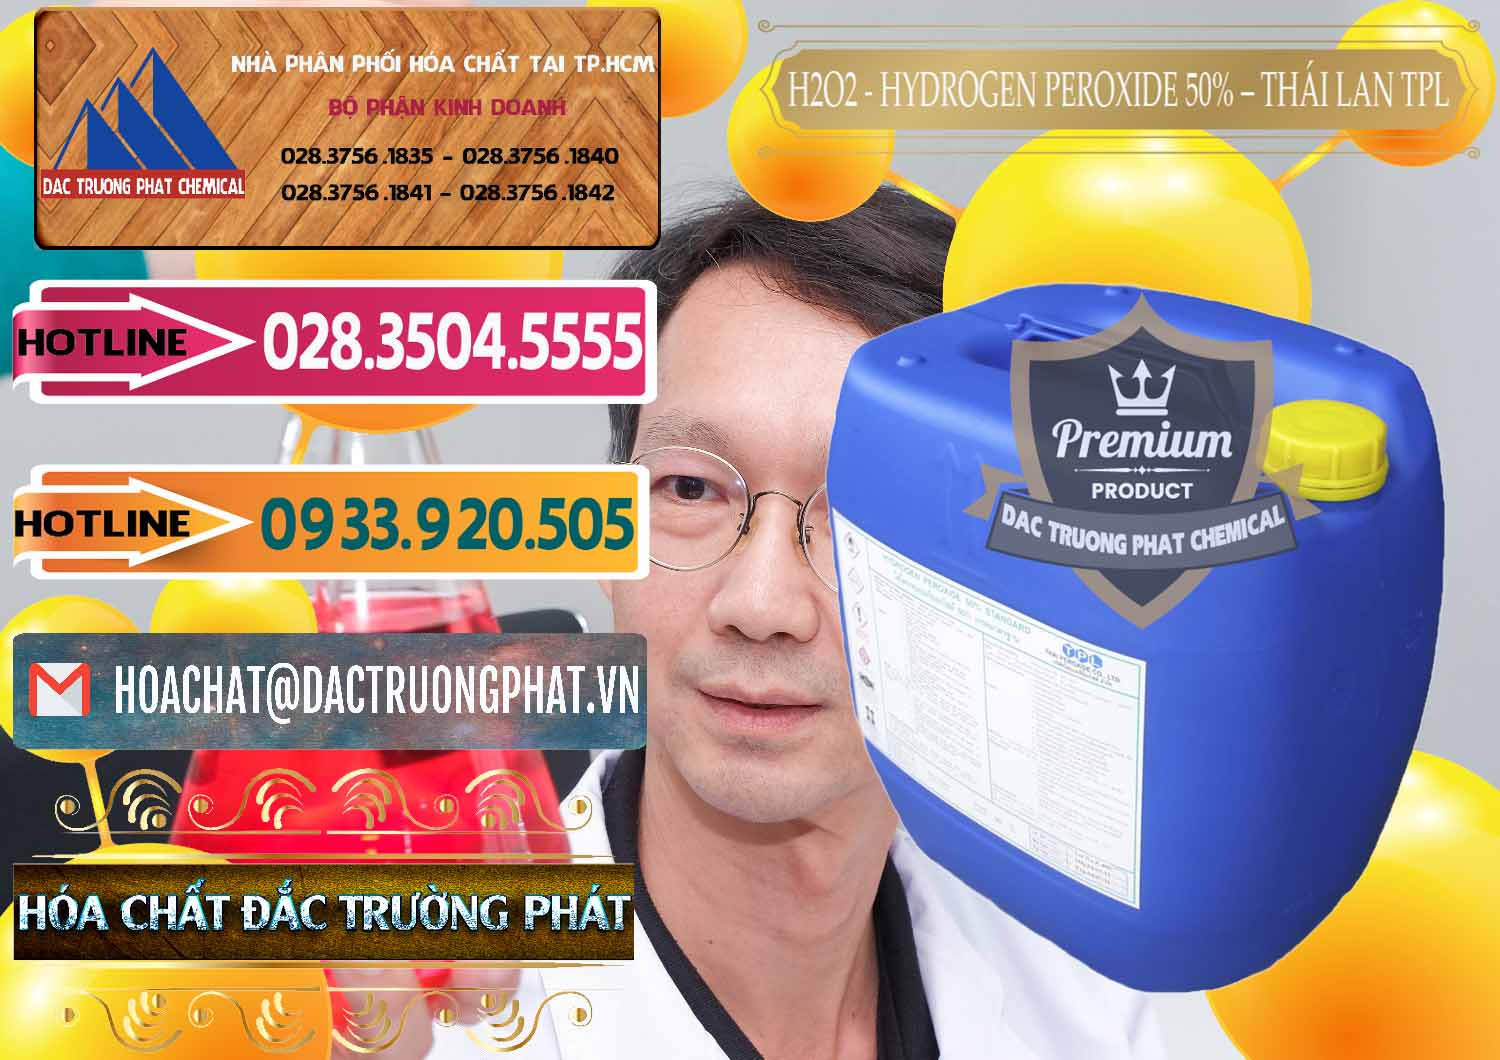 Nơi chuyên bán _ cung ứng H2O2 - Hydrogen Peroxide 50% Thái Lan TPL - 0076 - Đơn vị chuyên kinh doanh - phân phối hóa chất tại TP.HCM - dactruongphat.vn